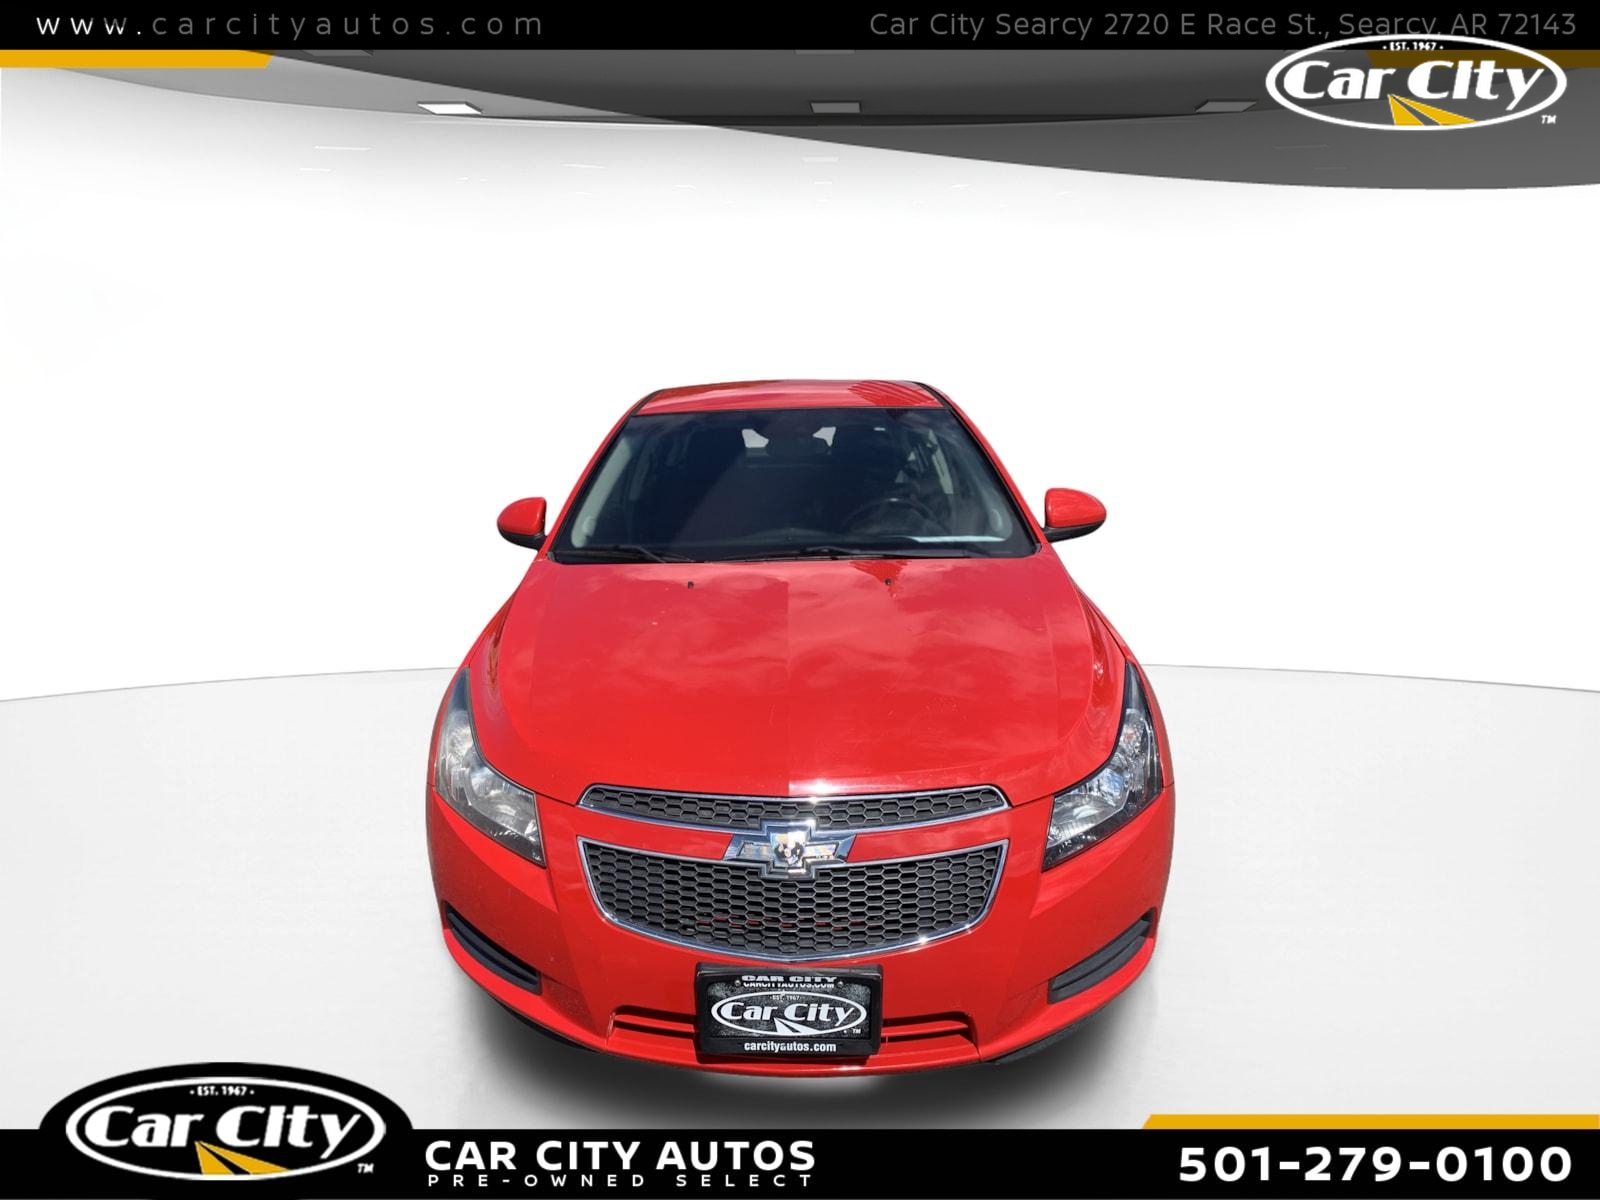 2014 Chevrolet Cruze 1LT  - E7419772RRR  - Car City Autos